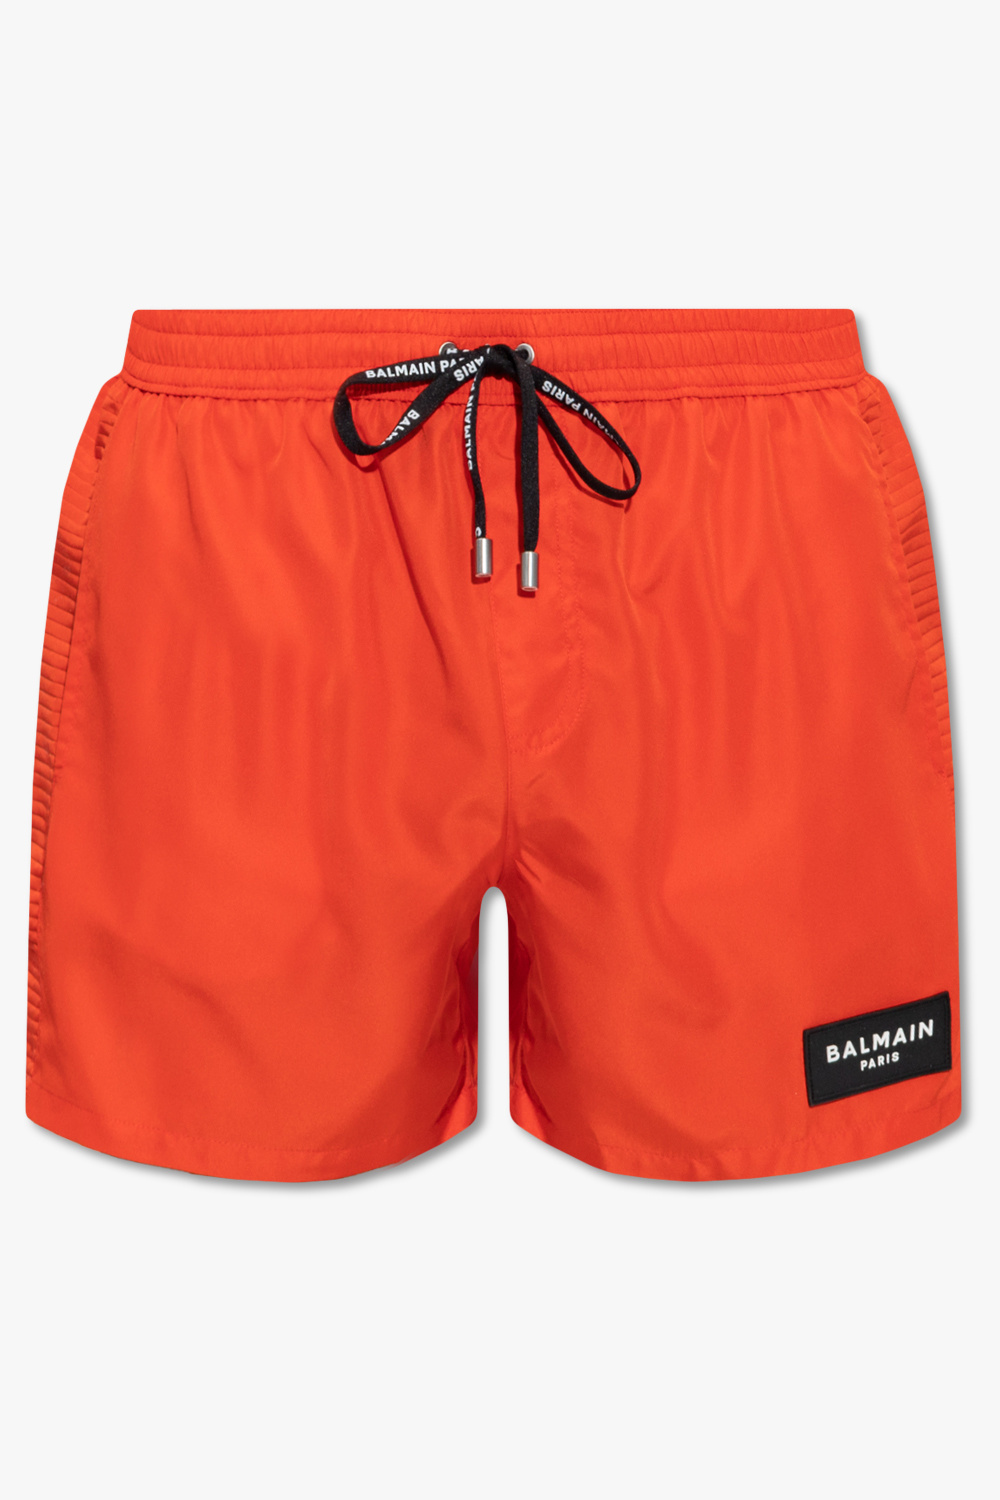 Louis Vuitton Signature Swim Board Shorts - Vitkac shop online